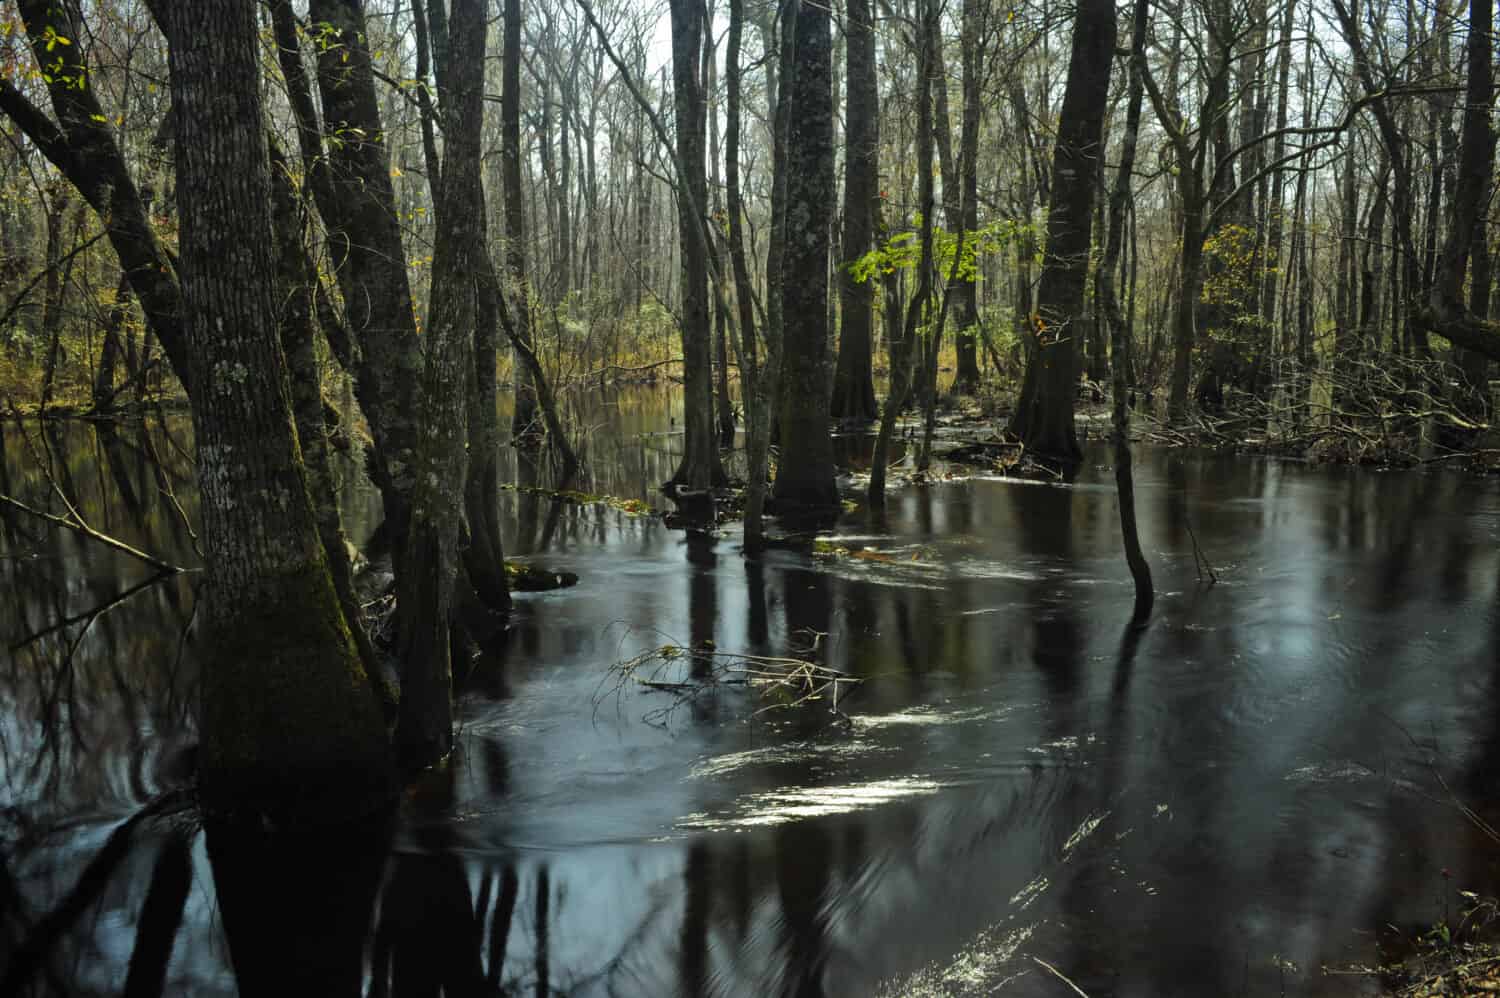 Little Pee Dee river in South Carolina